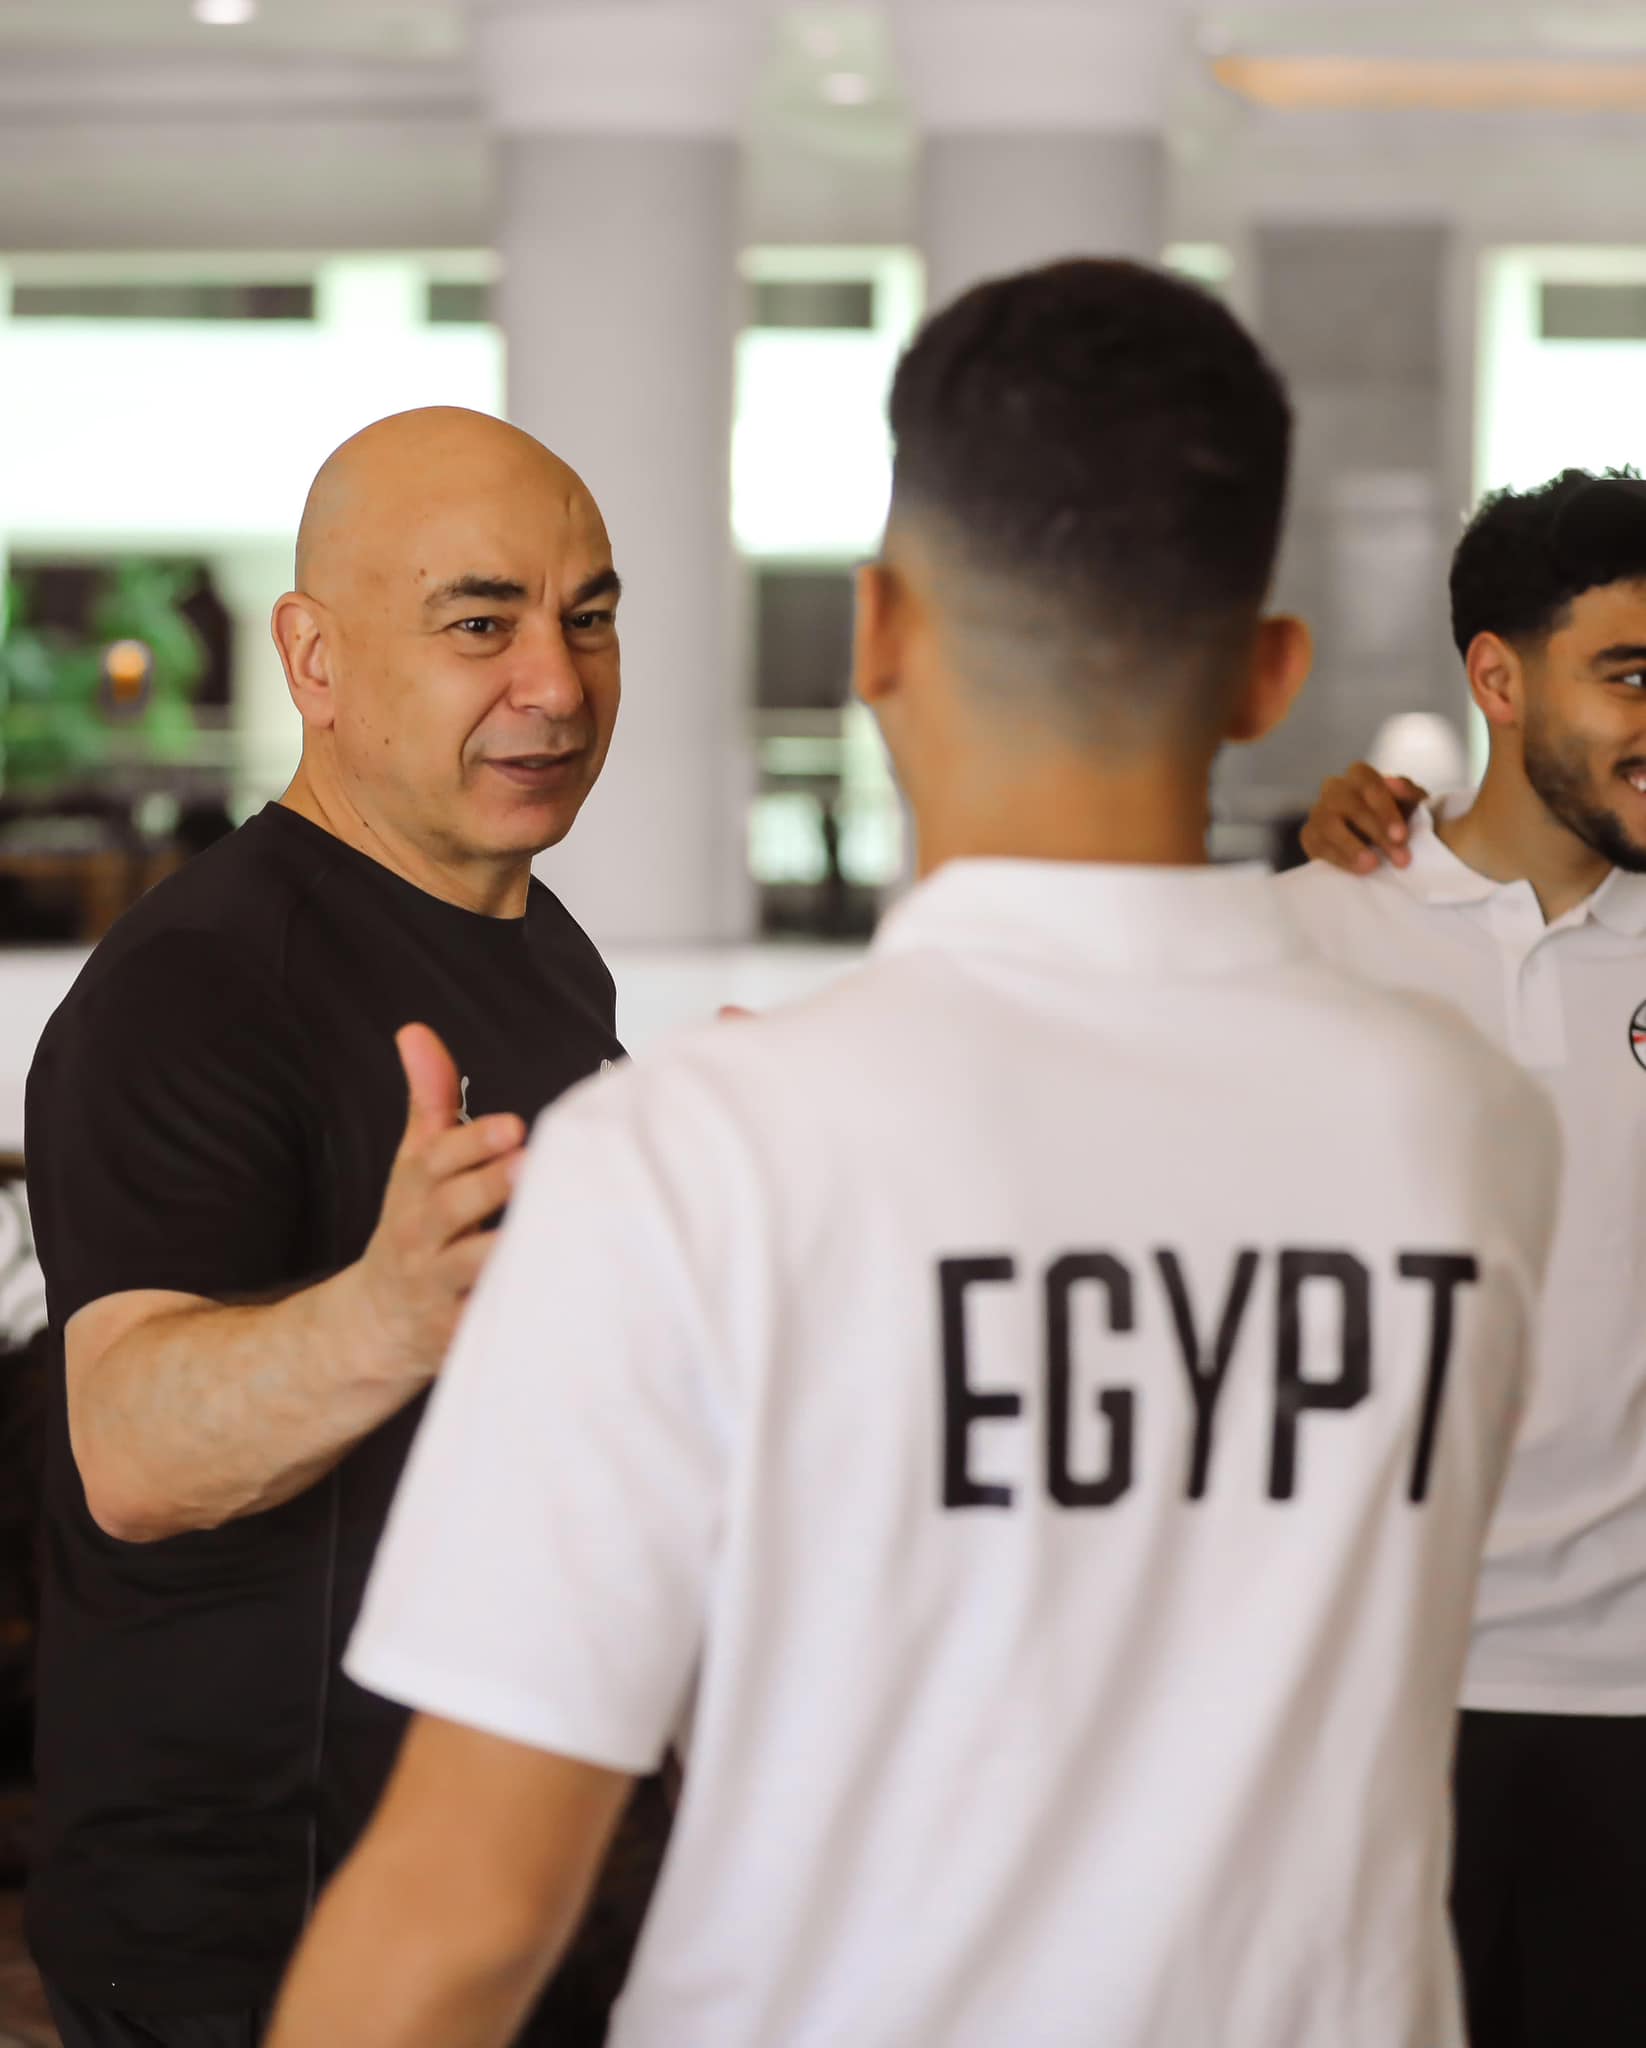 إنتظام لاعبي المنتخب المصري في معسكر المنتخب إستعدادا لتصفيات كأس العالم 